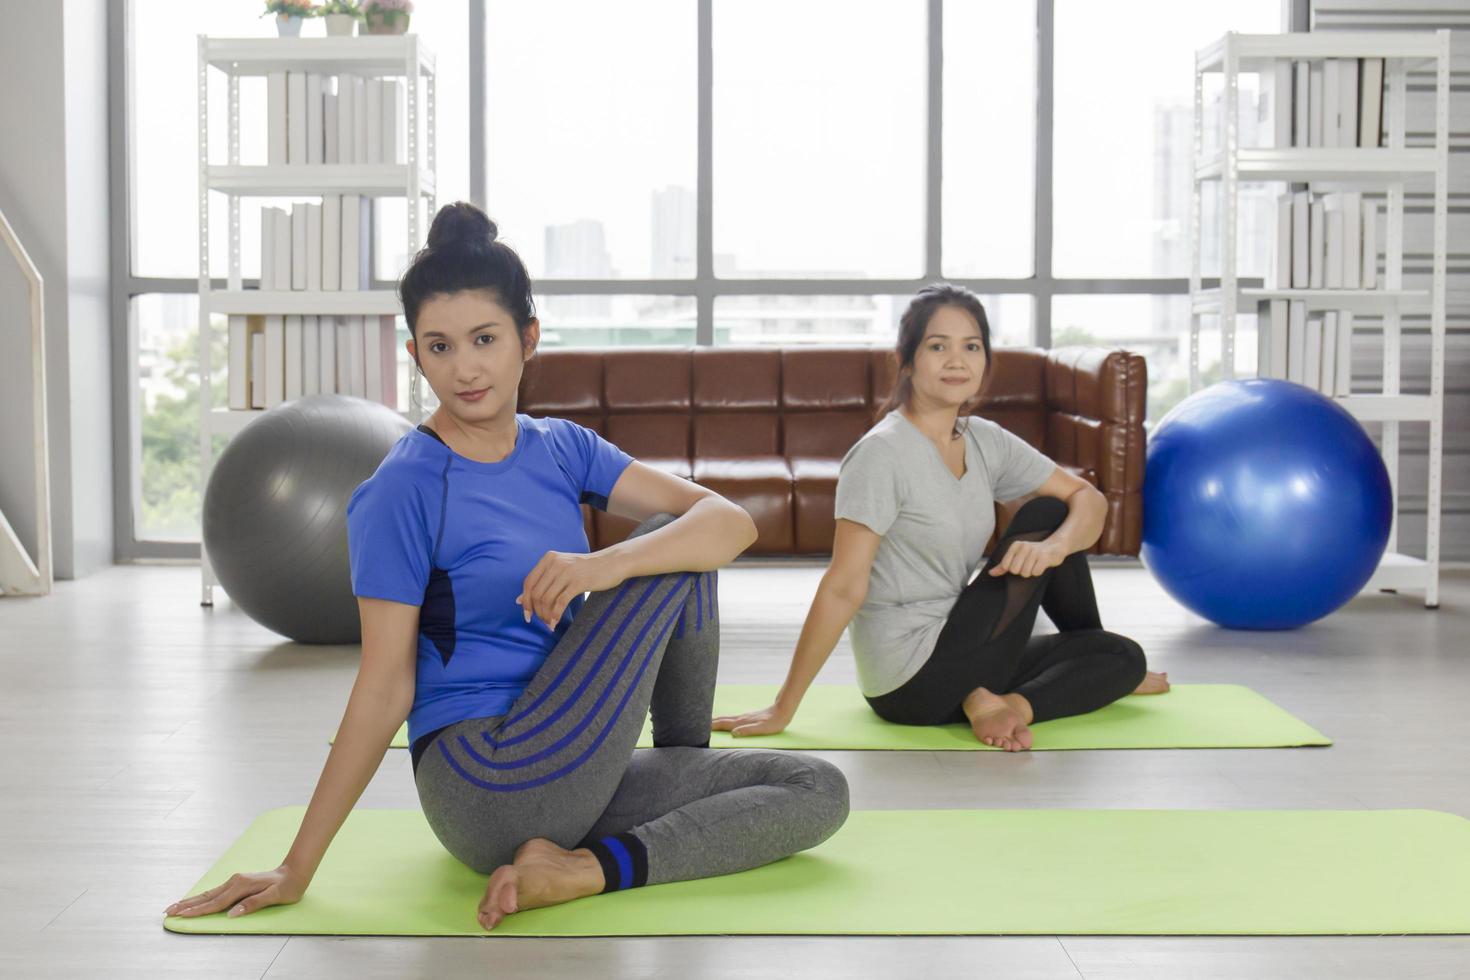 due donne asiatiche di mezza età stanno facendo yoga su un tappetino di gomma nella sua casa. foto